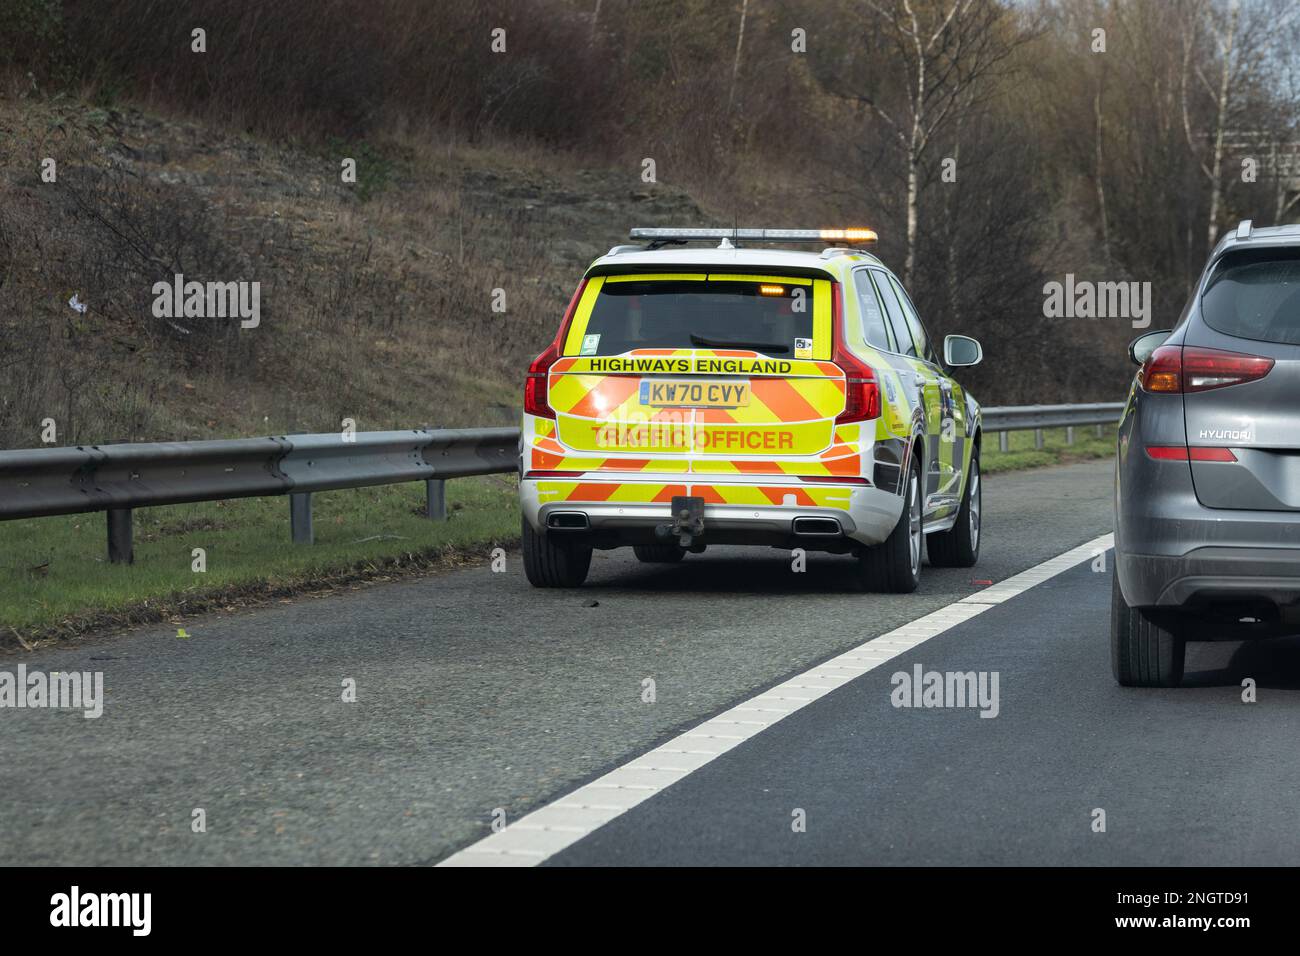 Highways England Fahrzeug, das auf der Autobahn mit harter Schulter fährt, um sich um einen Verkehrsunfall zu kümmern – Großbritannien Stockfoto